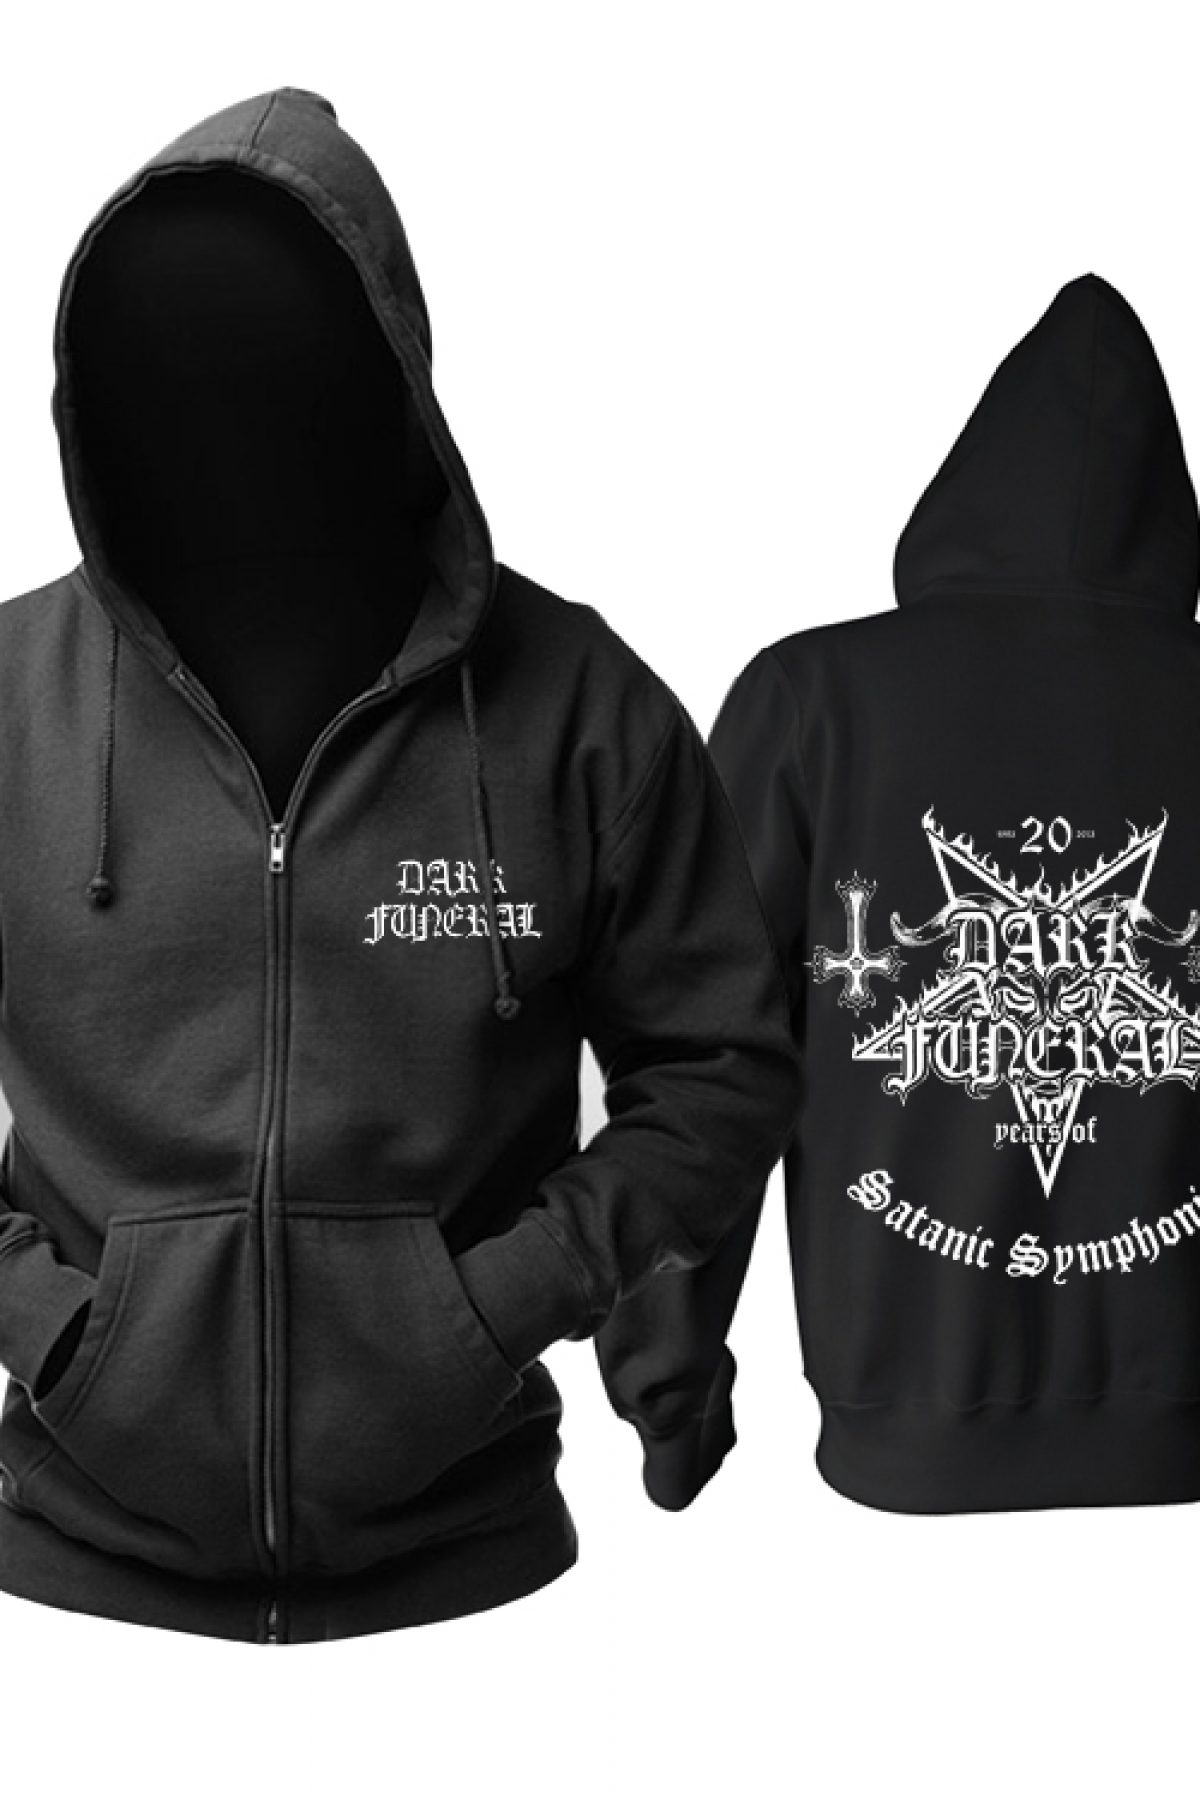 Buy Hoodie Dark Funeral Satanic Symphonies - IdolStore